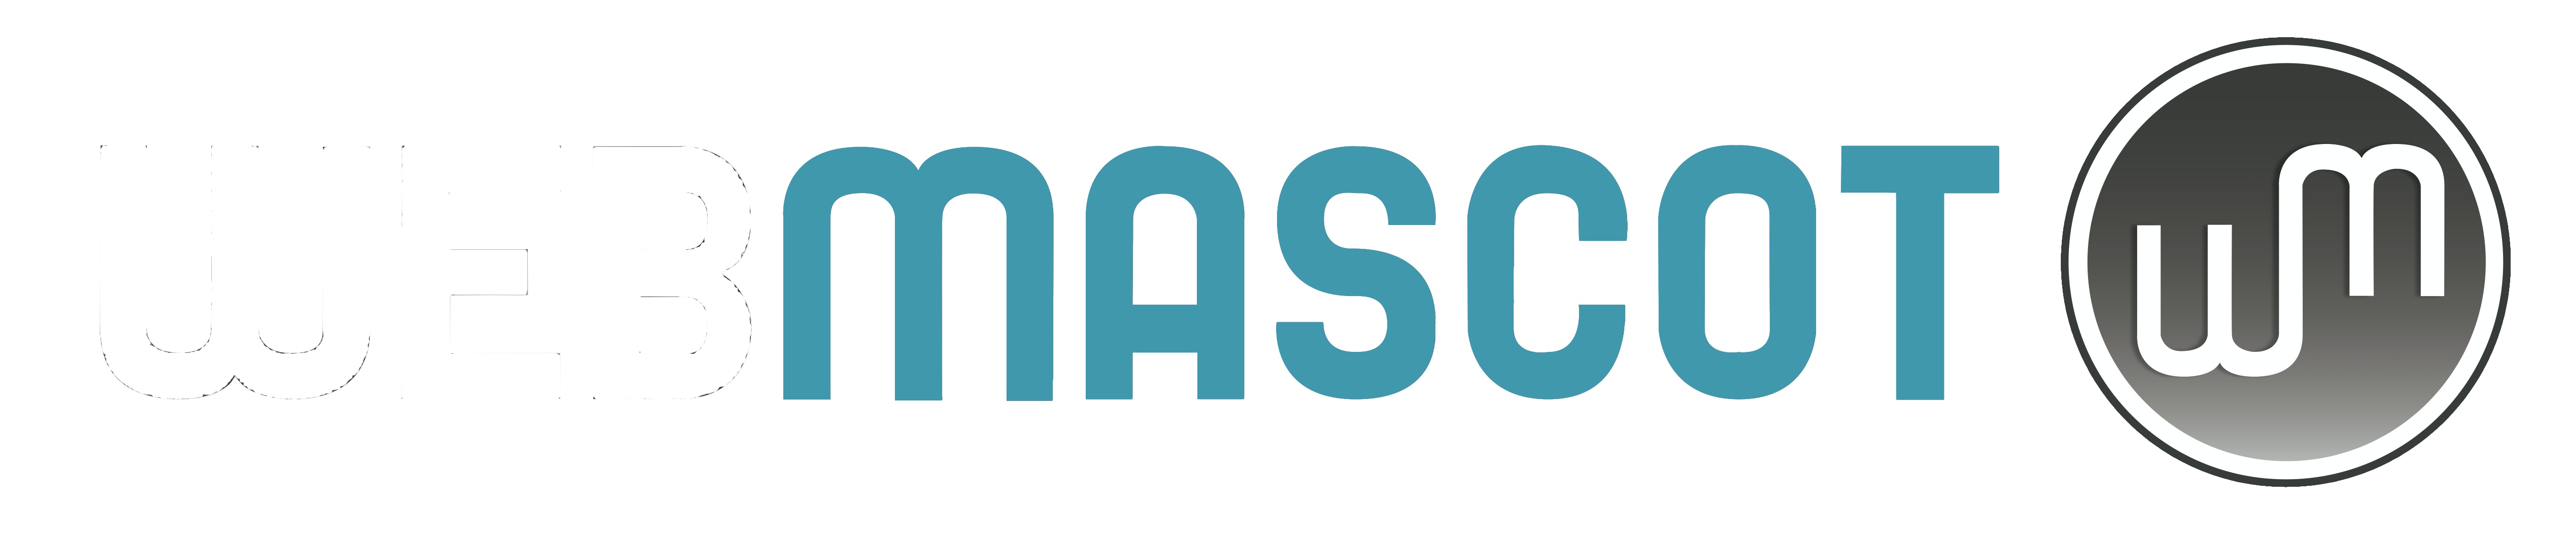 Webmascot administration logo